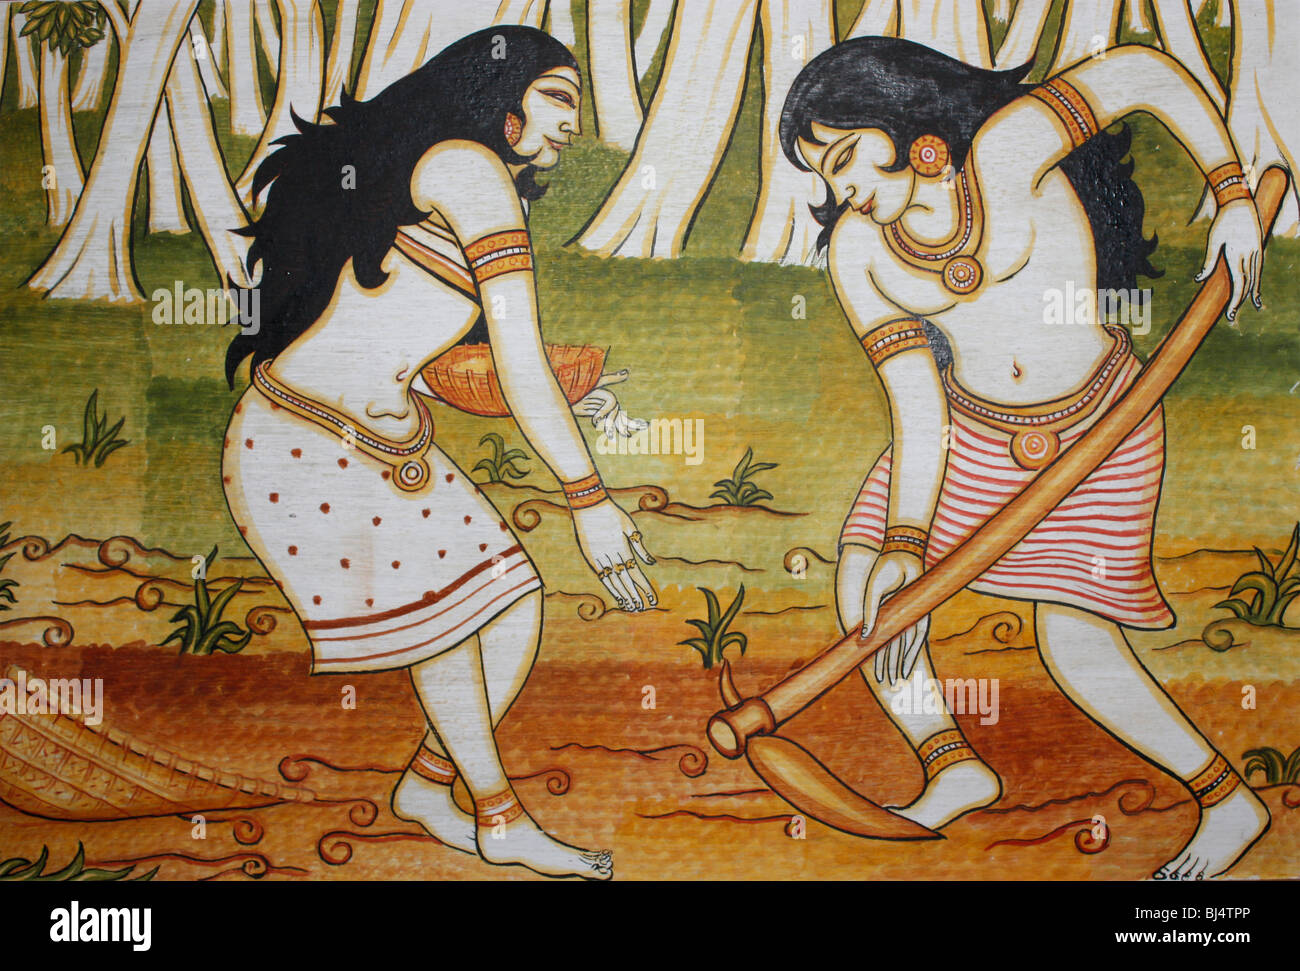 Un tableau peint sur le mur montrant la culture ethnique indien typique Banque D'Images